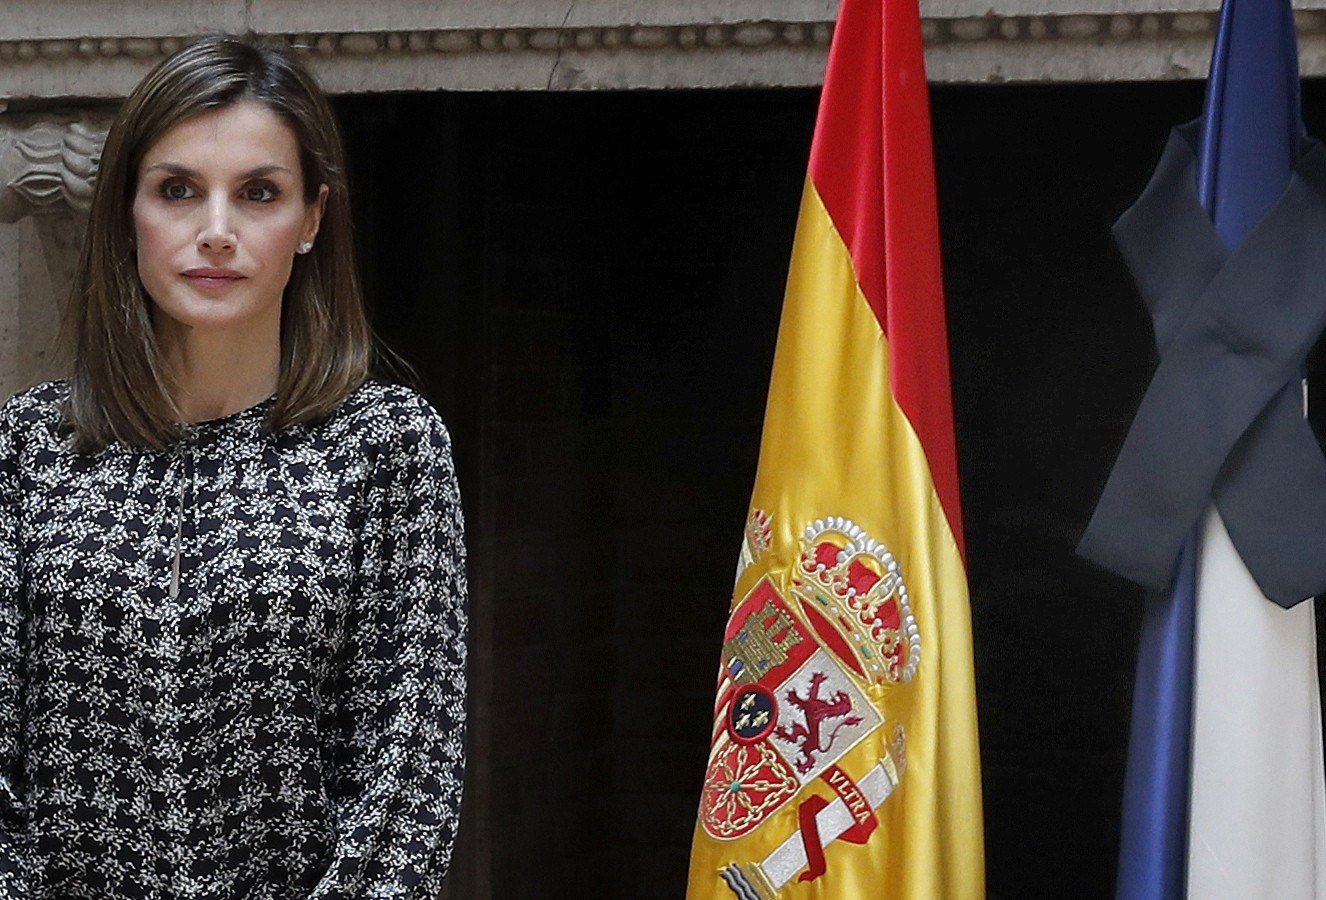 Queen Letizia's aunt in favour of Catalan referendum